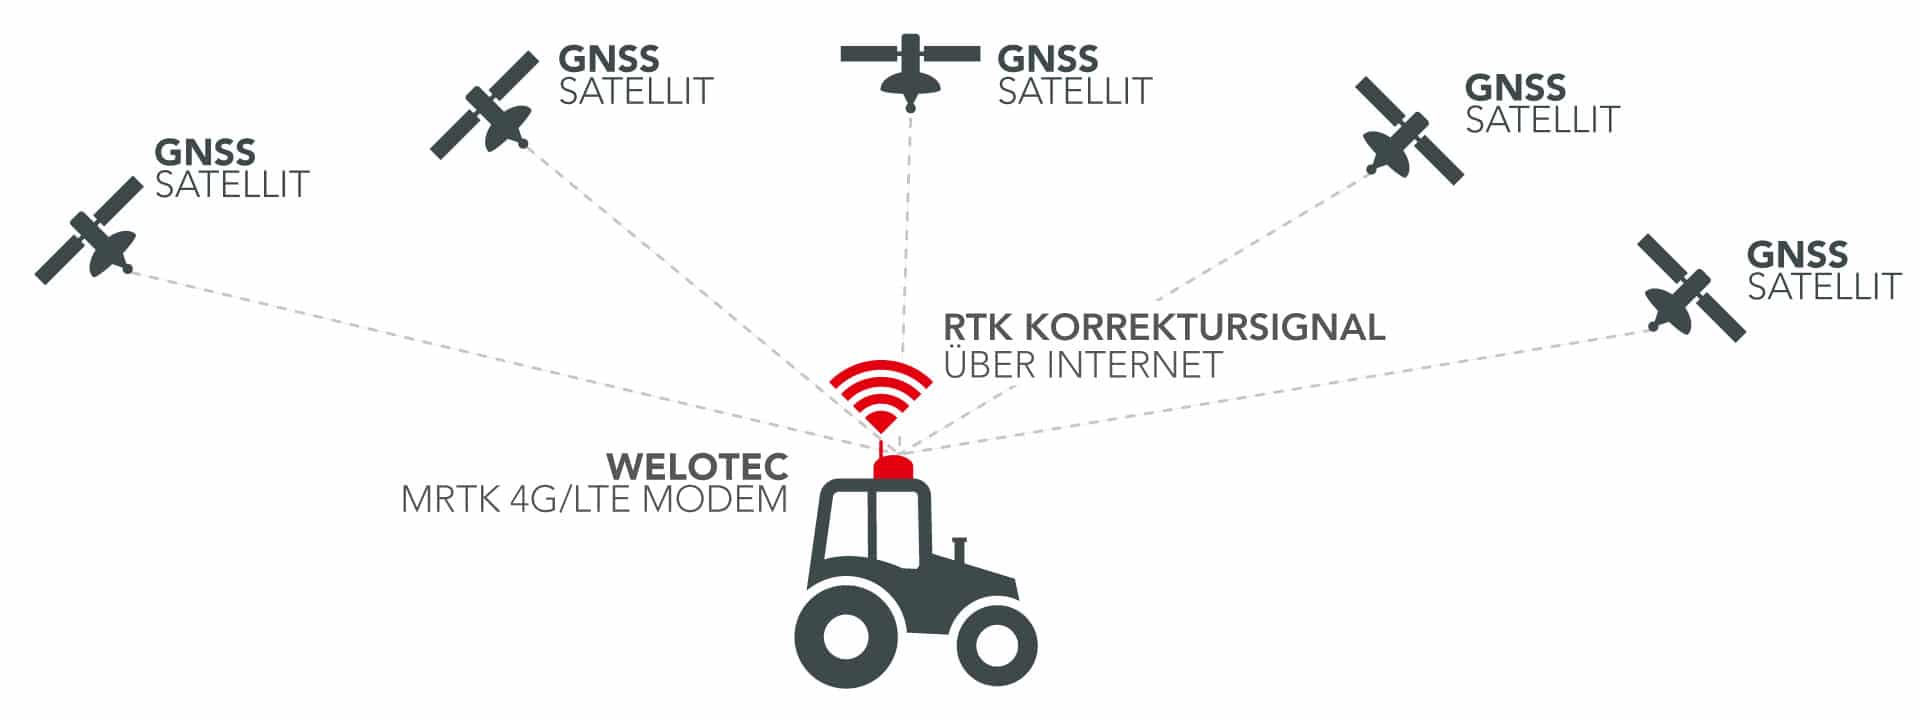 LTE M-RTK für Präzisionslandwirtschaft